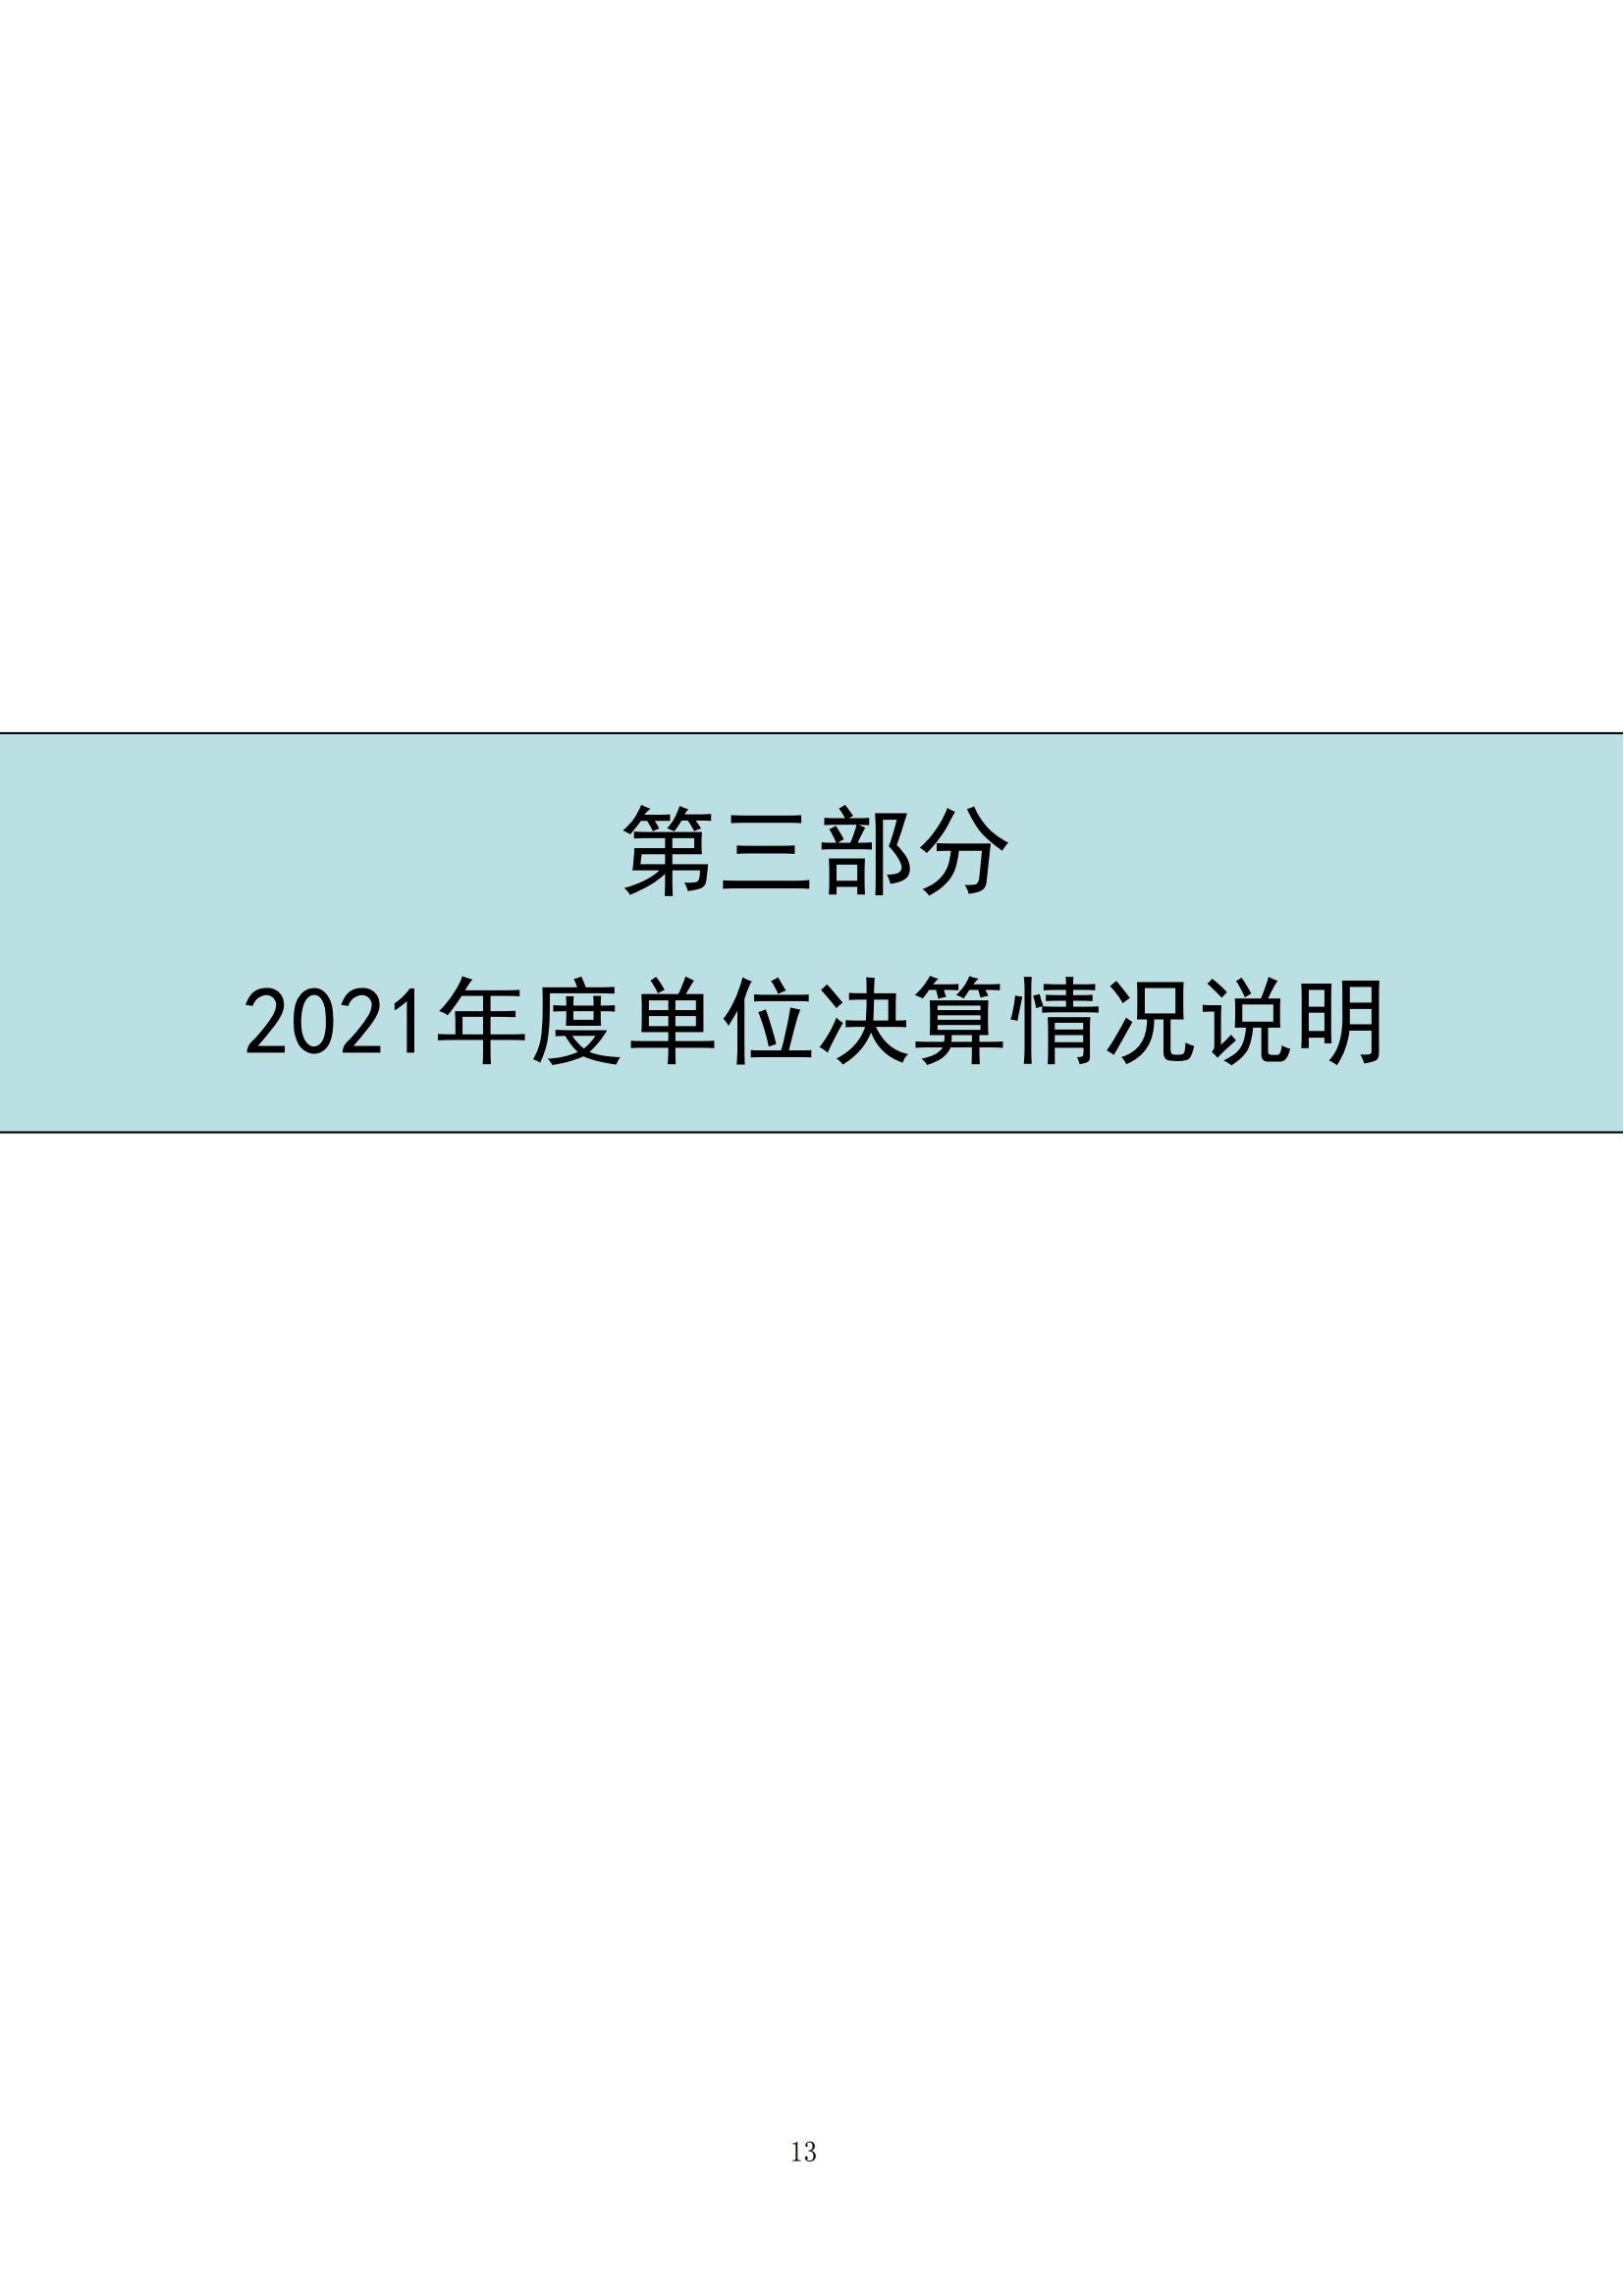 中国财政杂志社2021年度决算公开(8月10日周三统一公开）_15.png